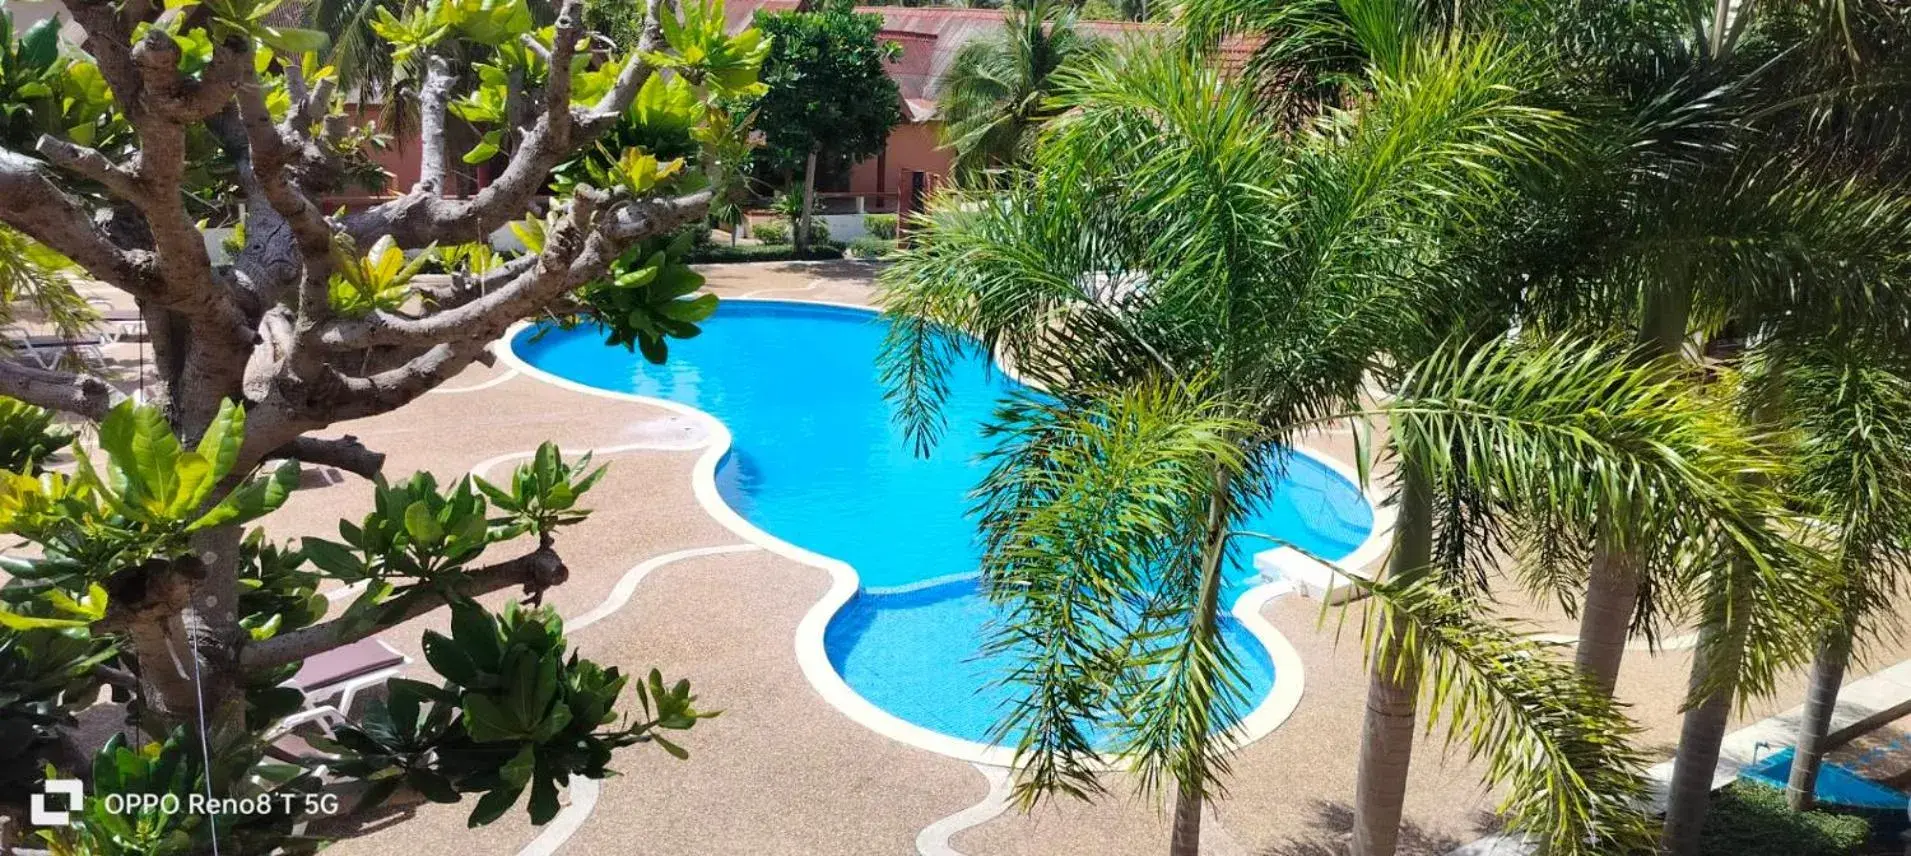 Pool View in D.R. Lanta Bay Resort